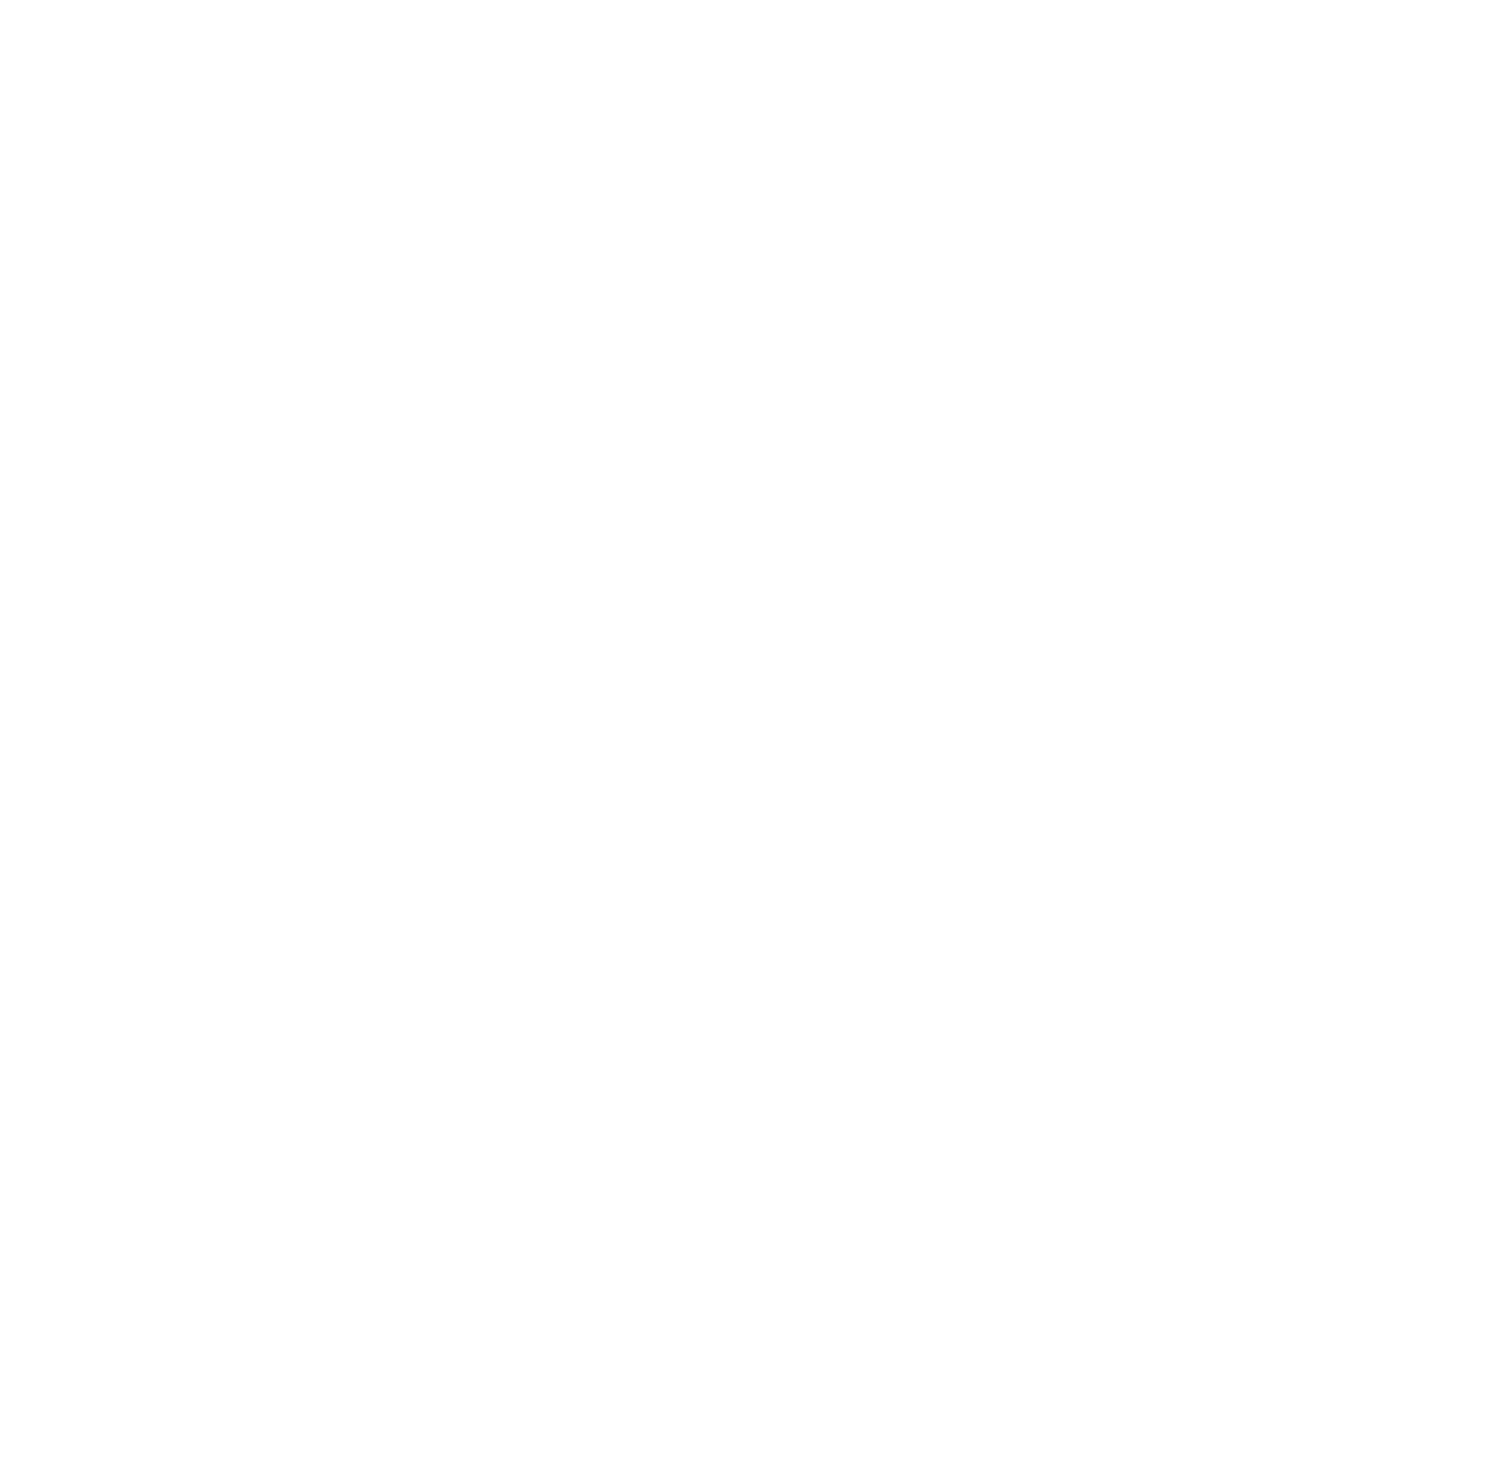 Vermont Celebrants